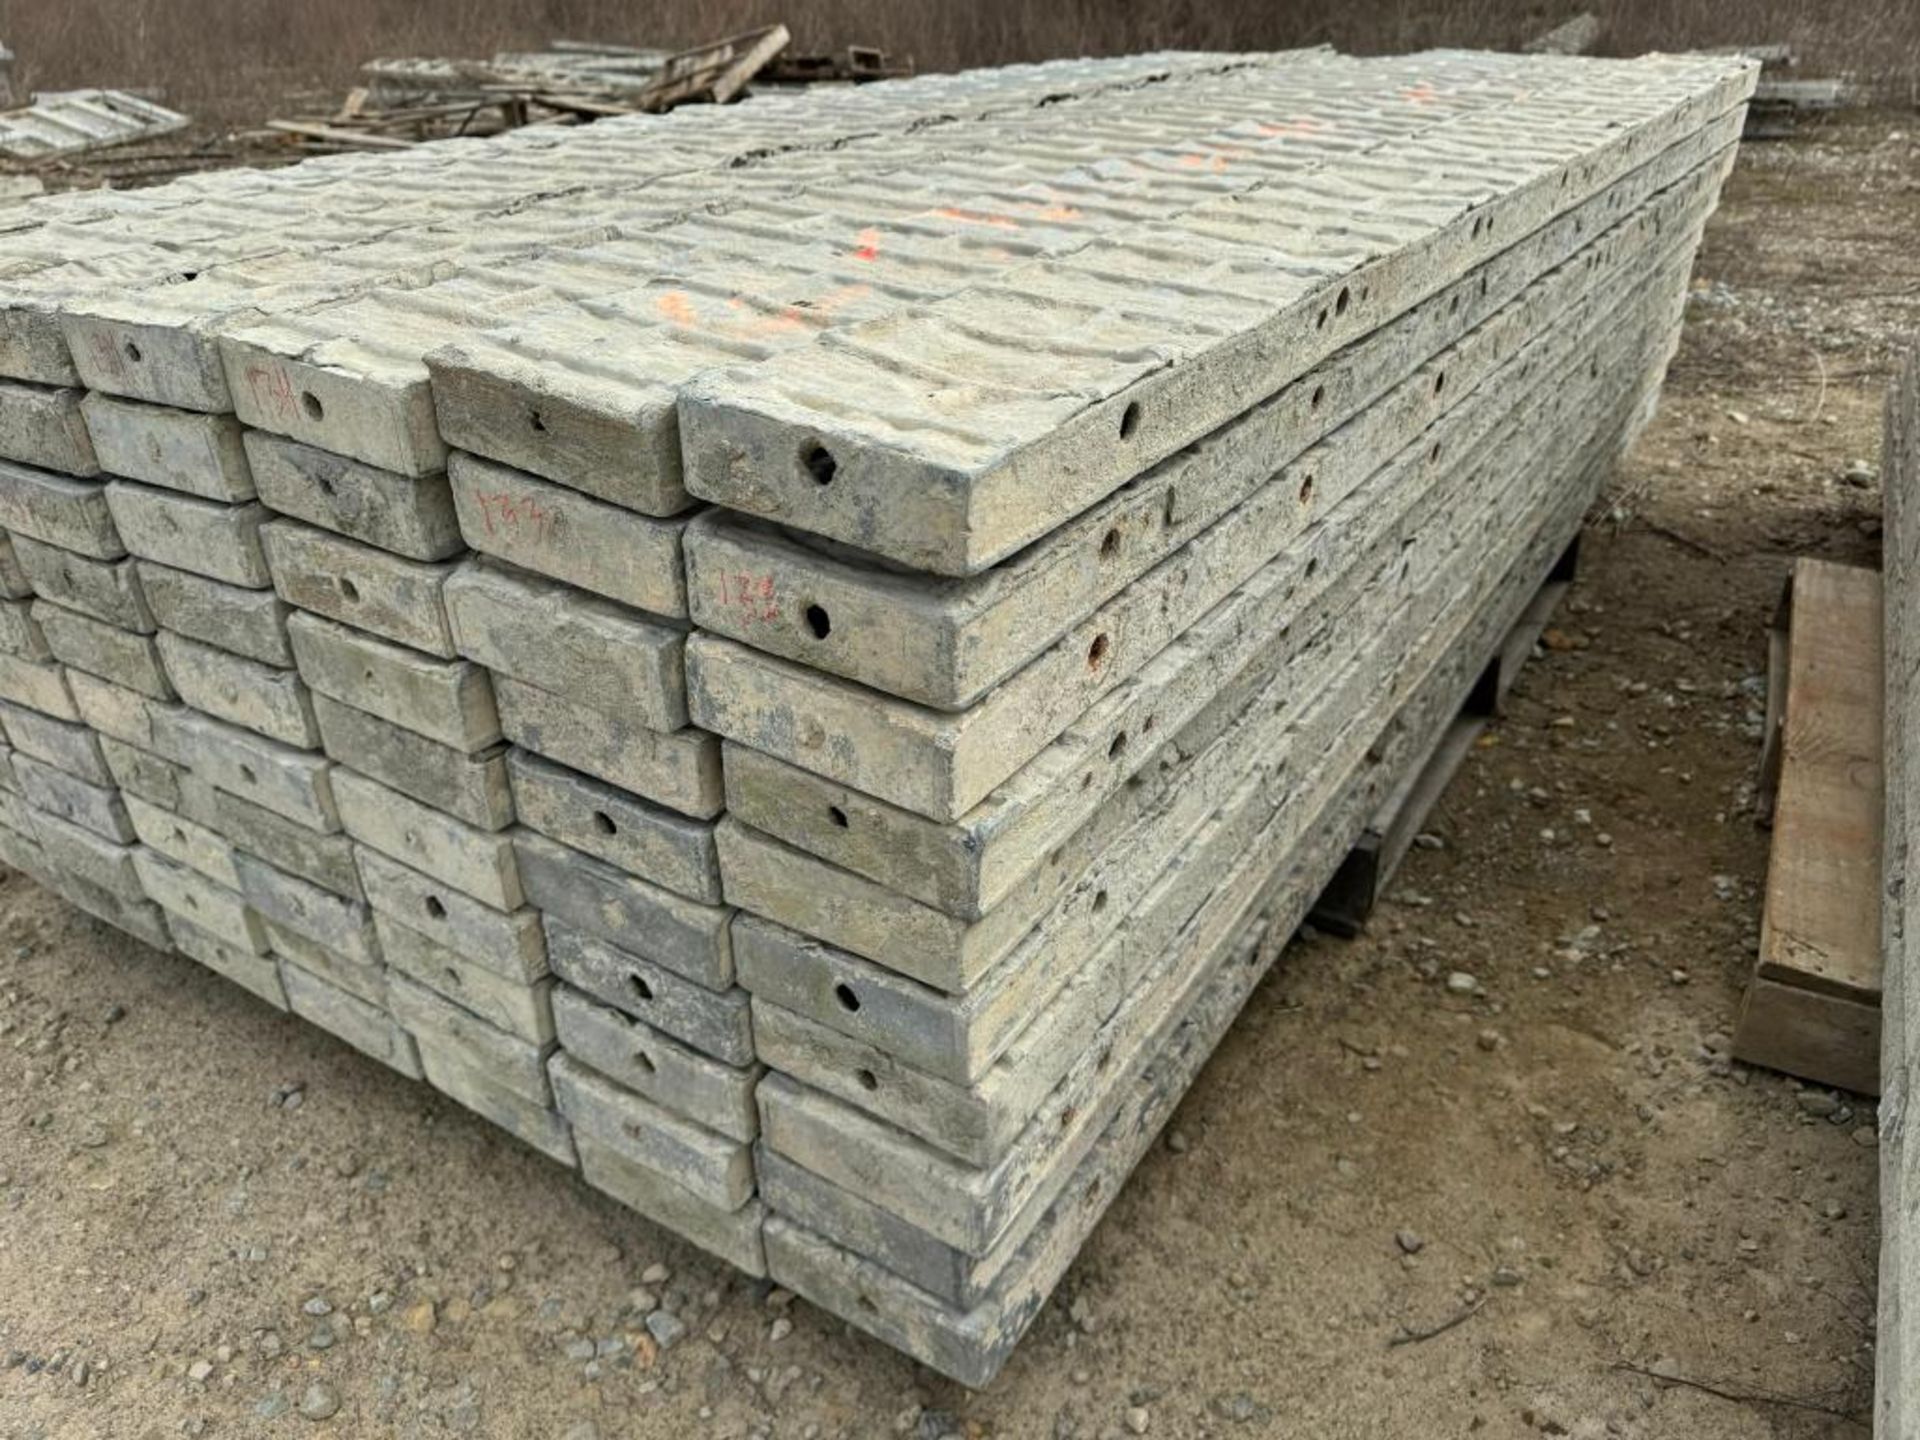 (20) 7" x 8' Textured Brick Aluminum Concrete Forms